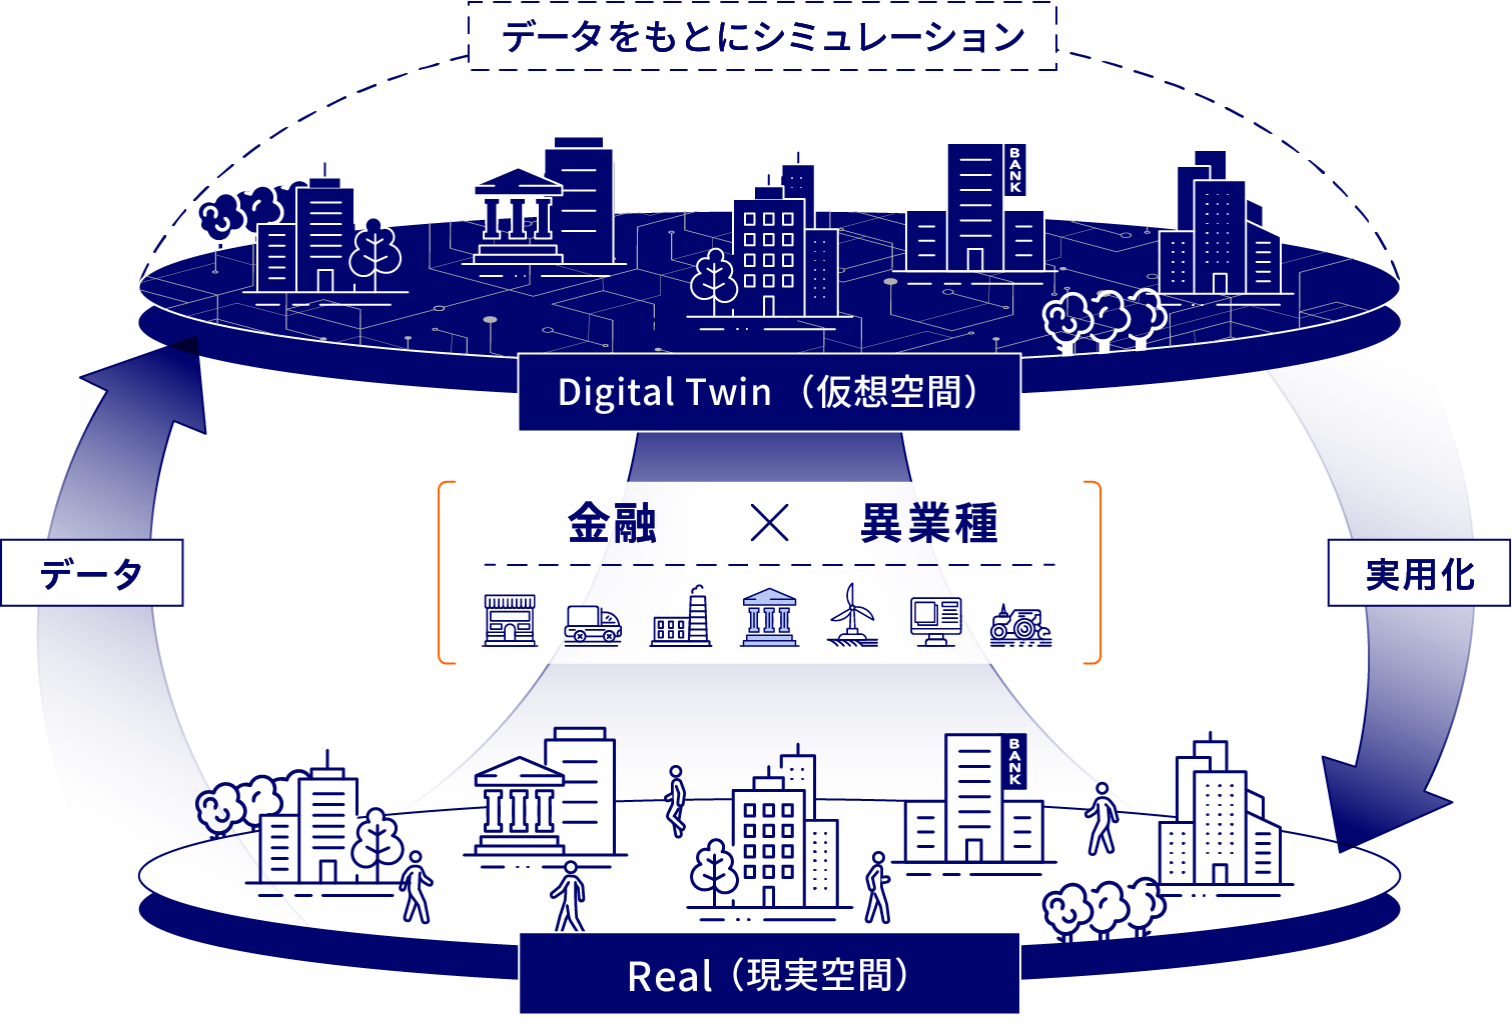 金融と異業種の連携により、Real（現実空間）のデータに対し、Digital Twin（仮想空間）にてデータをもとにシミュレーション。シミュレーション結果をReal（現実空間）に実用化。